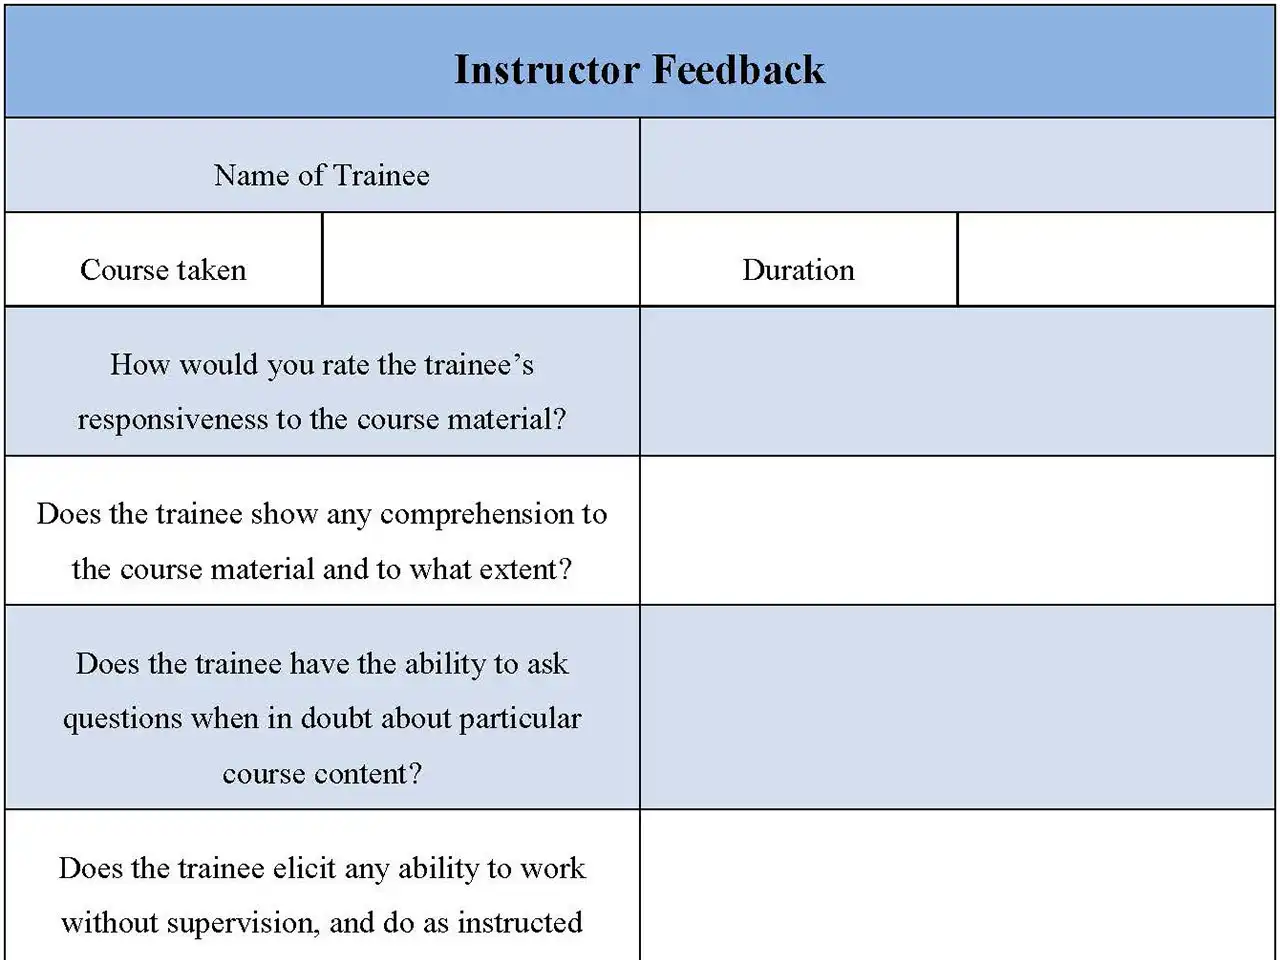 Instructor Feedback Form